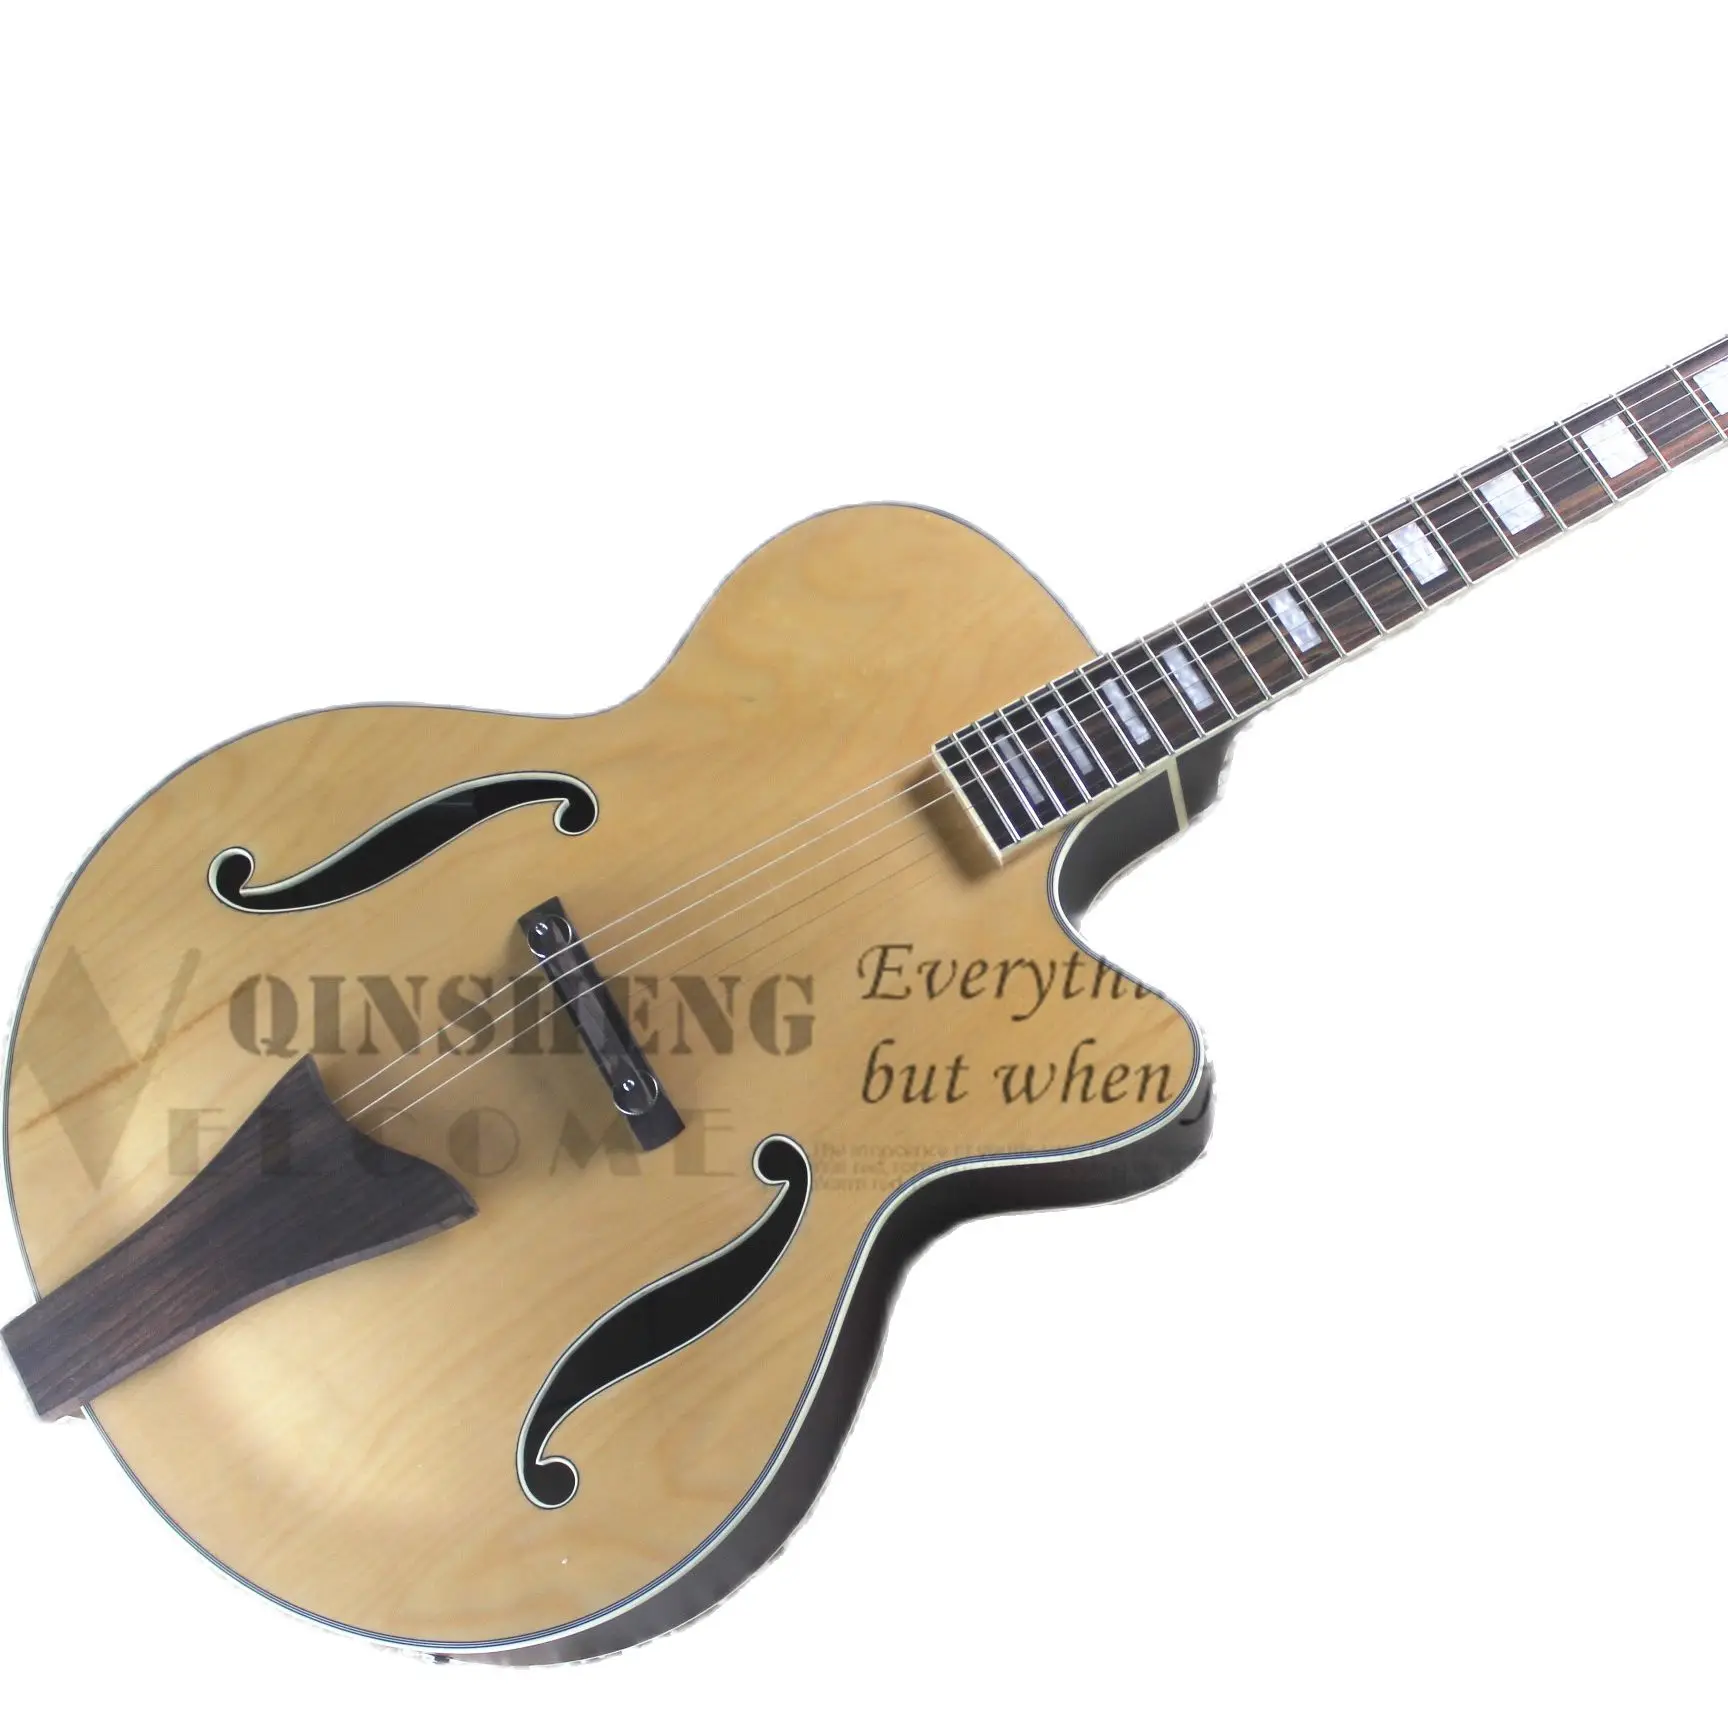 

Presell Factory Custom Electric Guitar L5 Guitar,Semi-hollow Maple Body Rosewood Bridge Brown Back